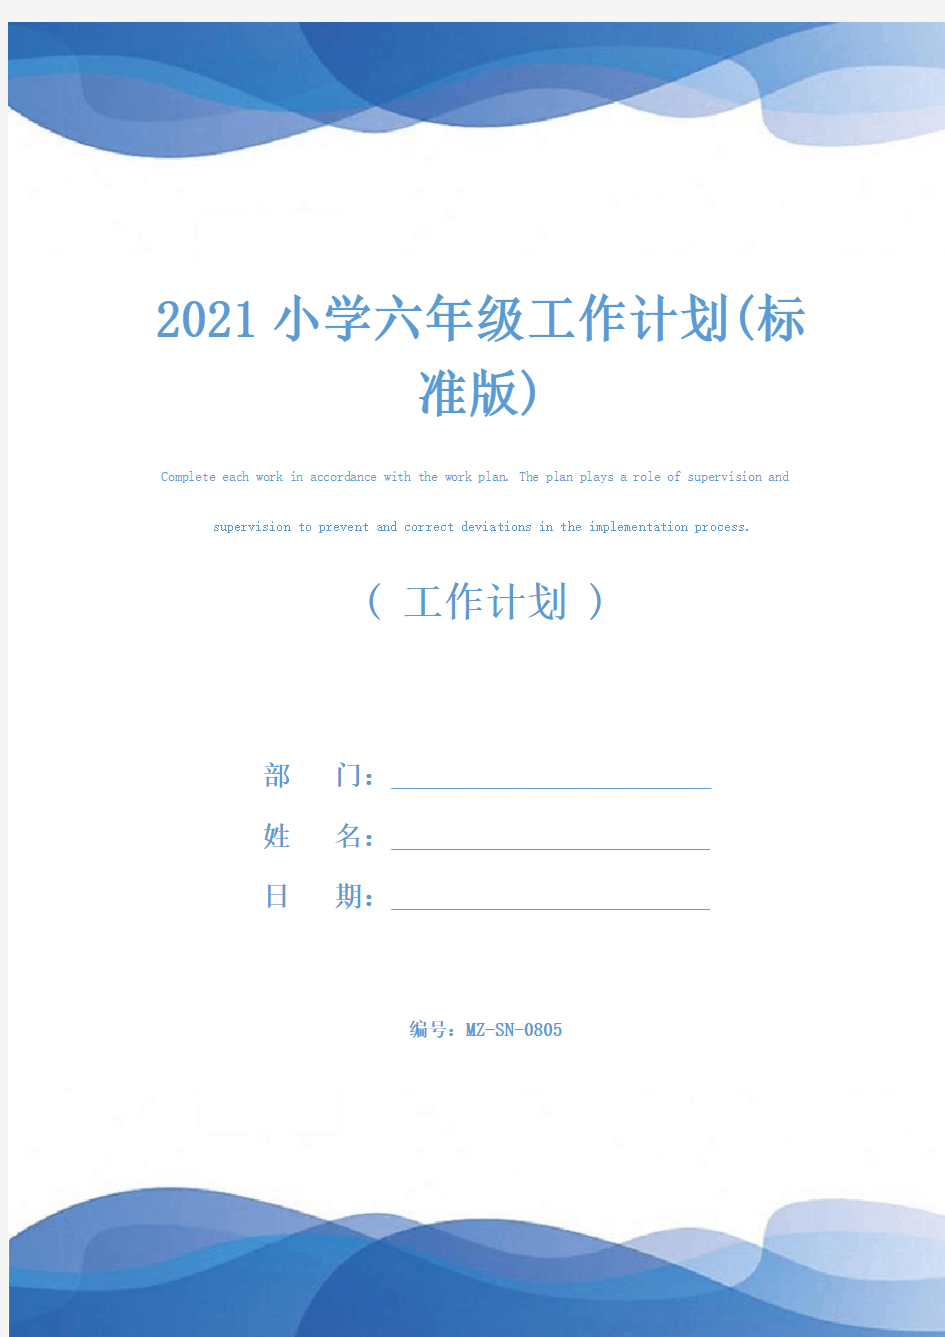 2021小学六年级工作计划(标准版)